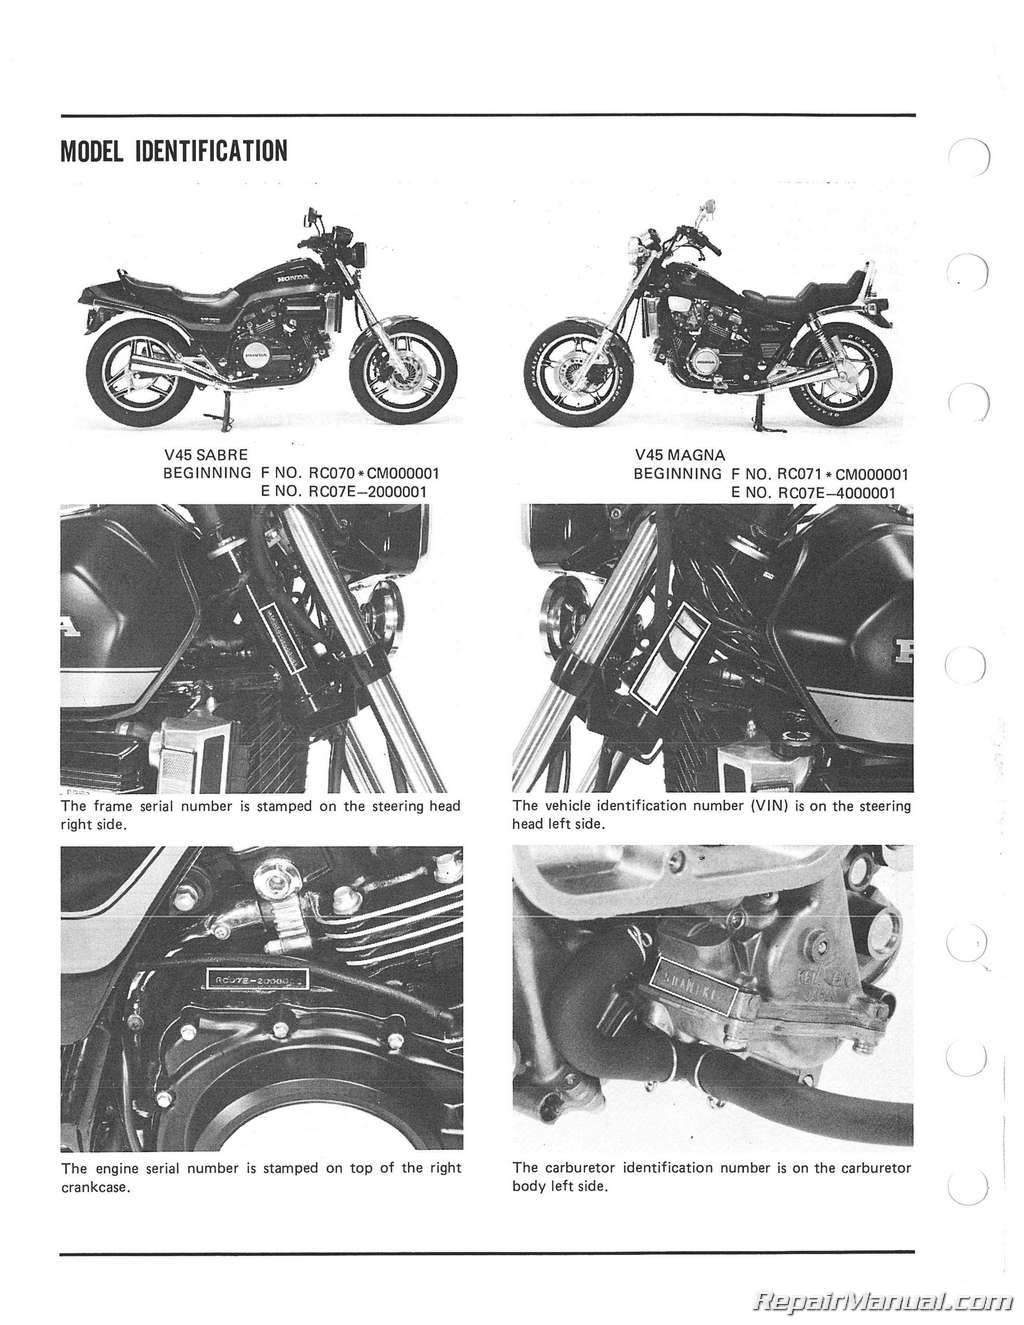 1983 Honda magna v45 owners manual #5